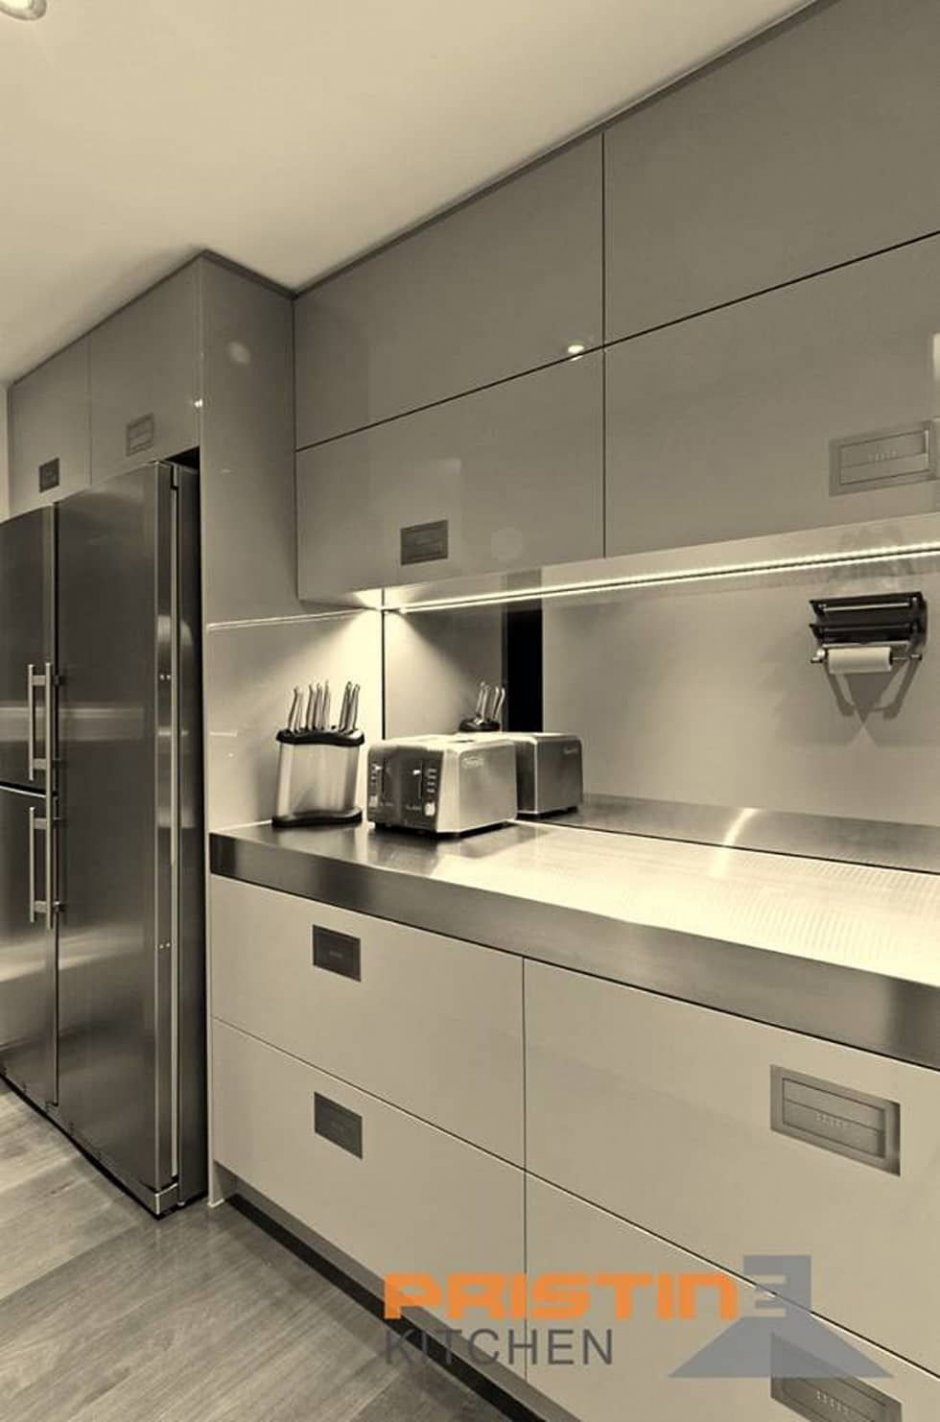 Серебристый холодильник в интерьере кухни